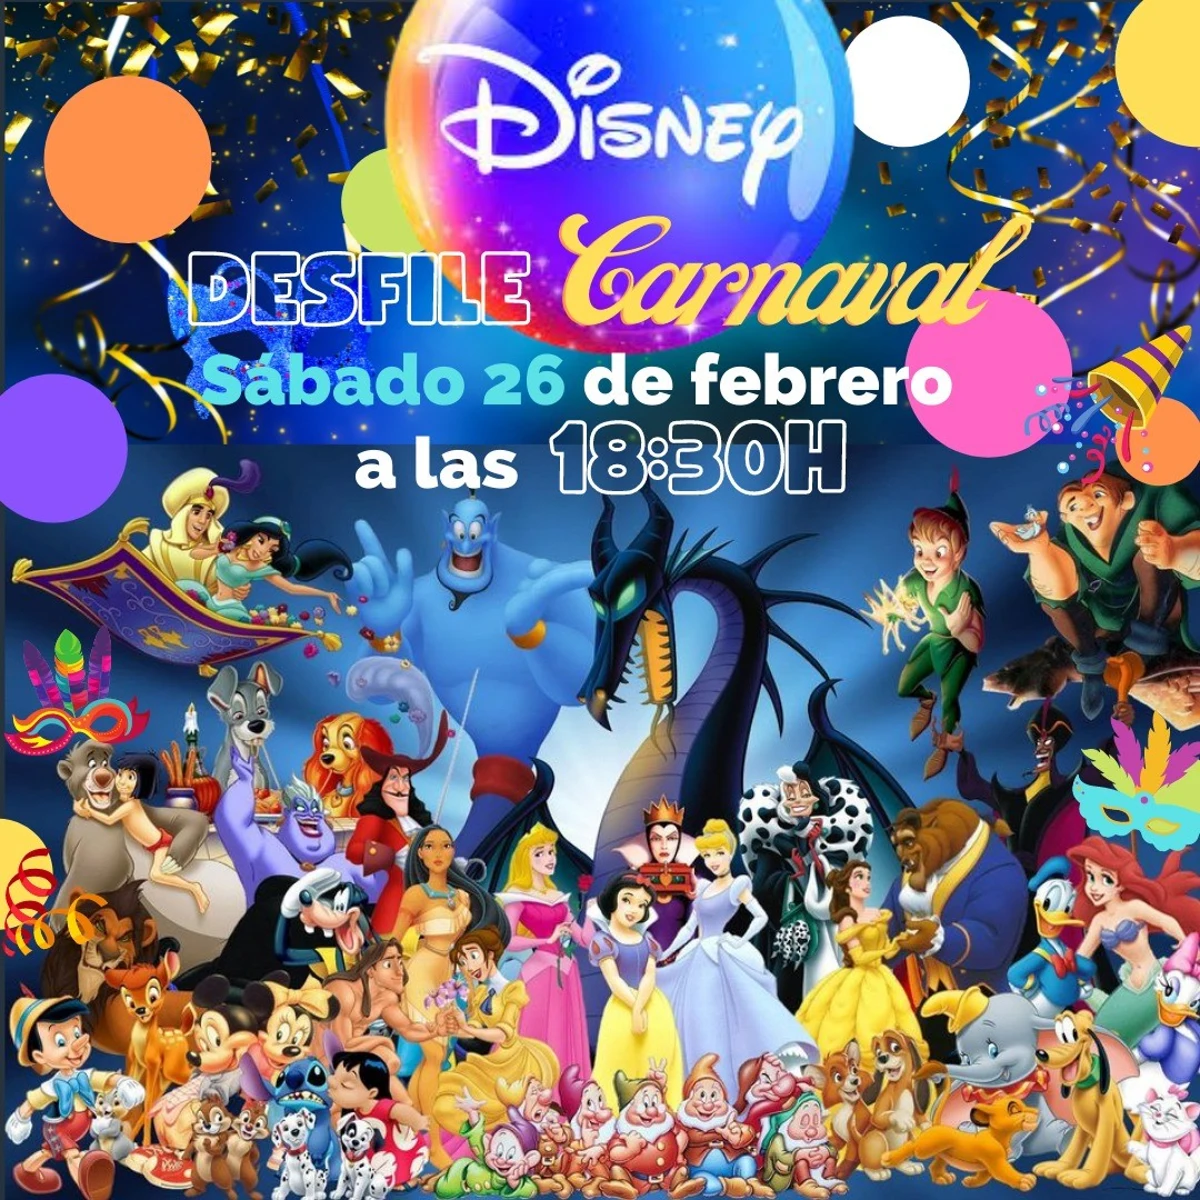 curva lucha unos pocos El mundo Disney centrará el Carnaval de Sabiñánigo | Onda Cero Radio